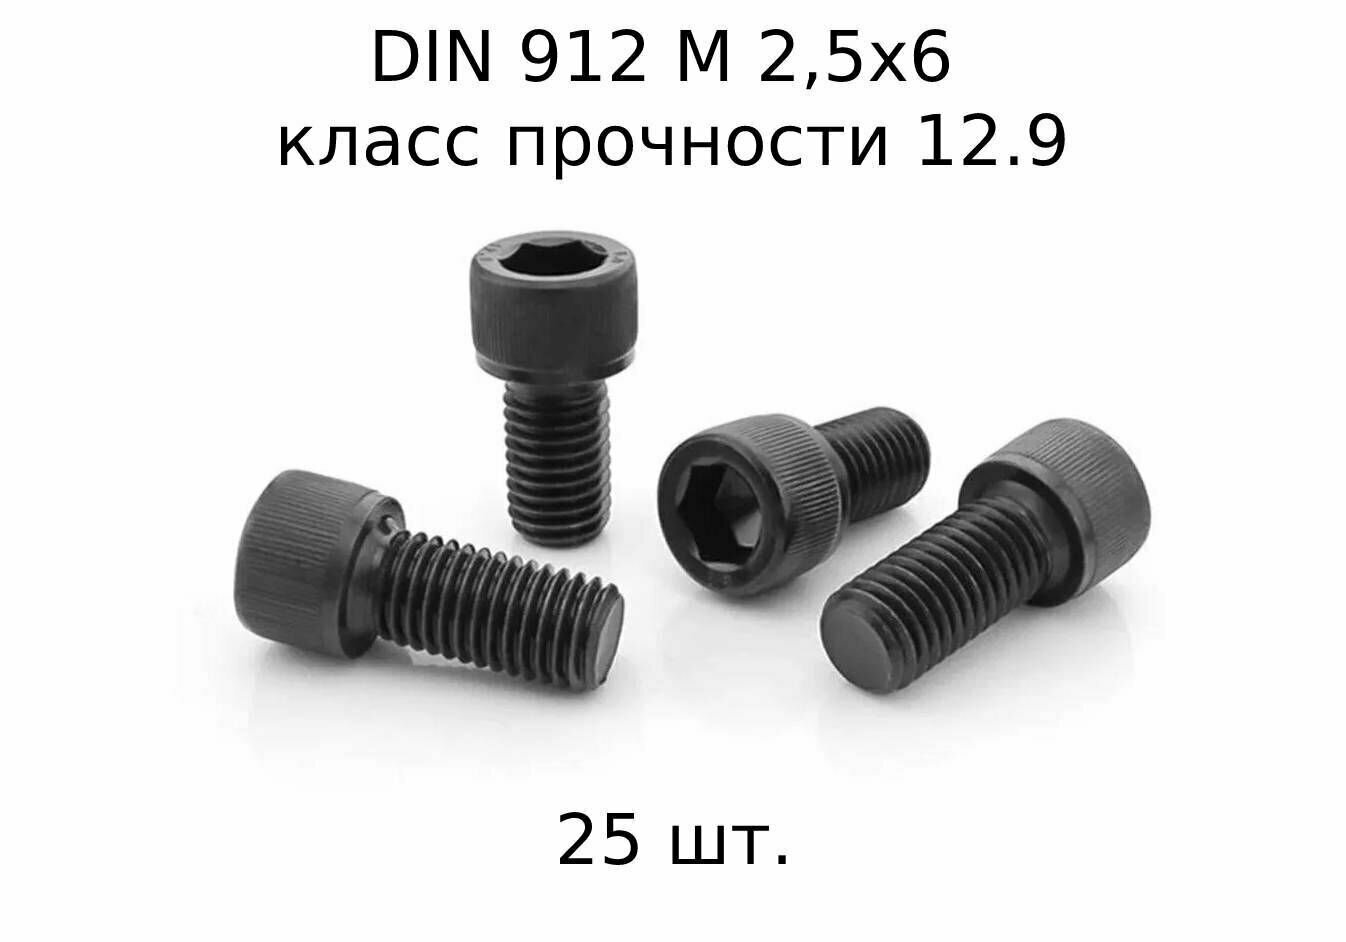 Винт DIN 912 M 2,5x6 с внутренним шестигранником, класс прочности 12.9, оксидированные, черные 25 шт.